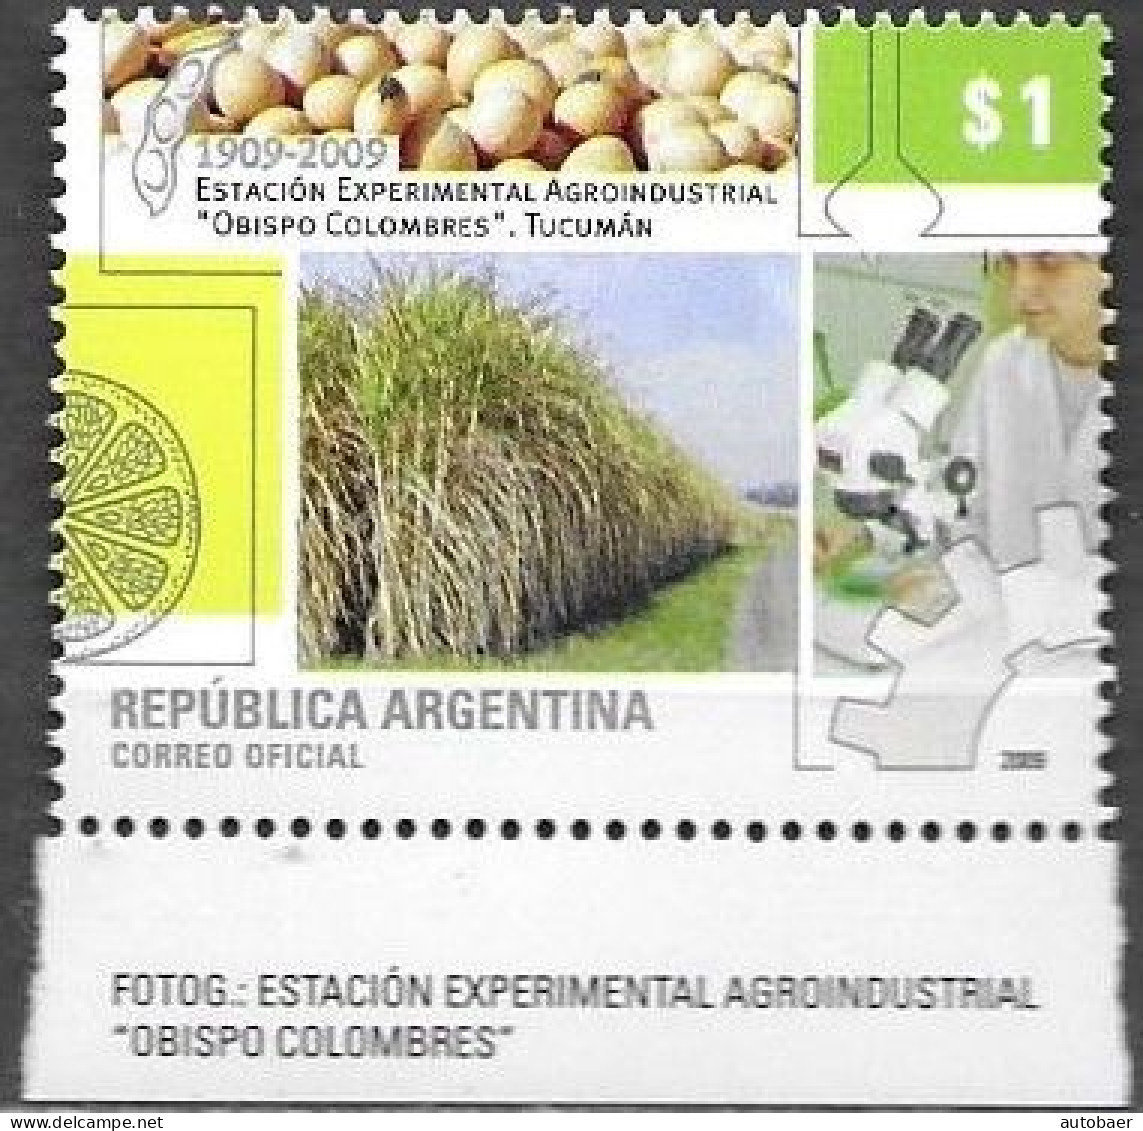 Argentina 2009 Agroindustrial Station Estacion Bishop Obispo Colombres Tucuman Michel 3254 MNH Postfrisch Neuf ** - Ungebraucht